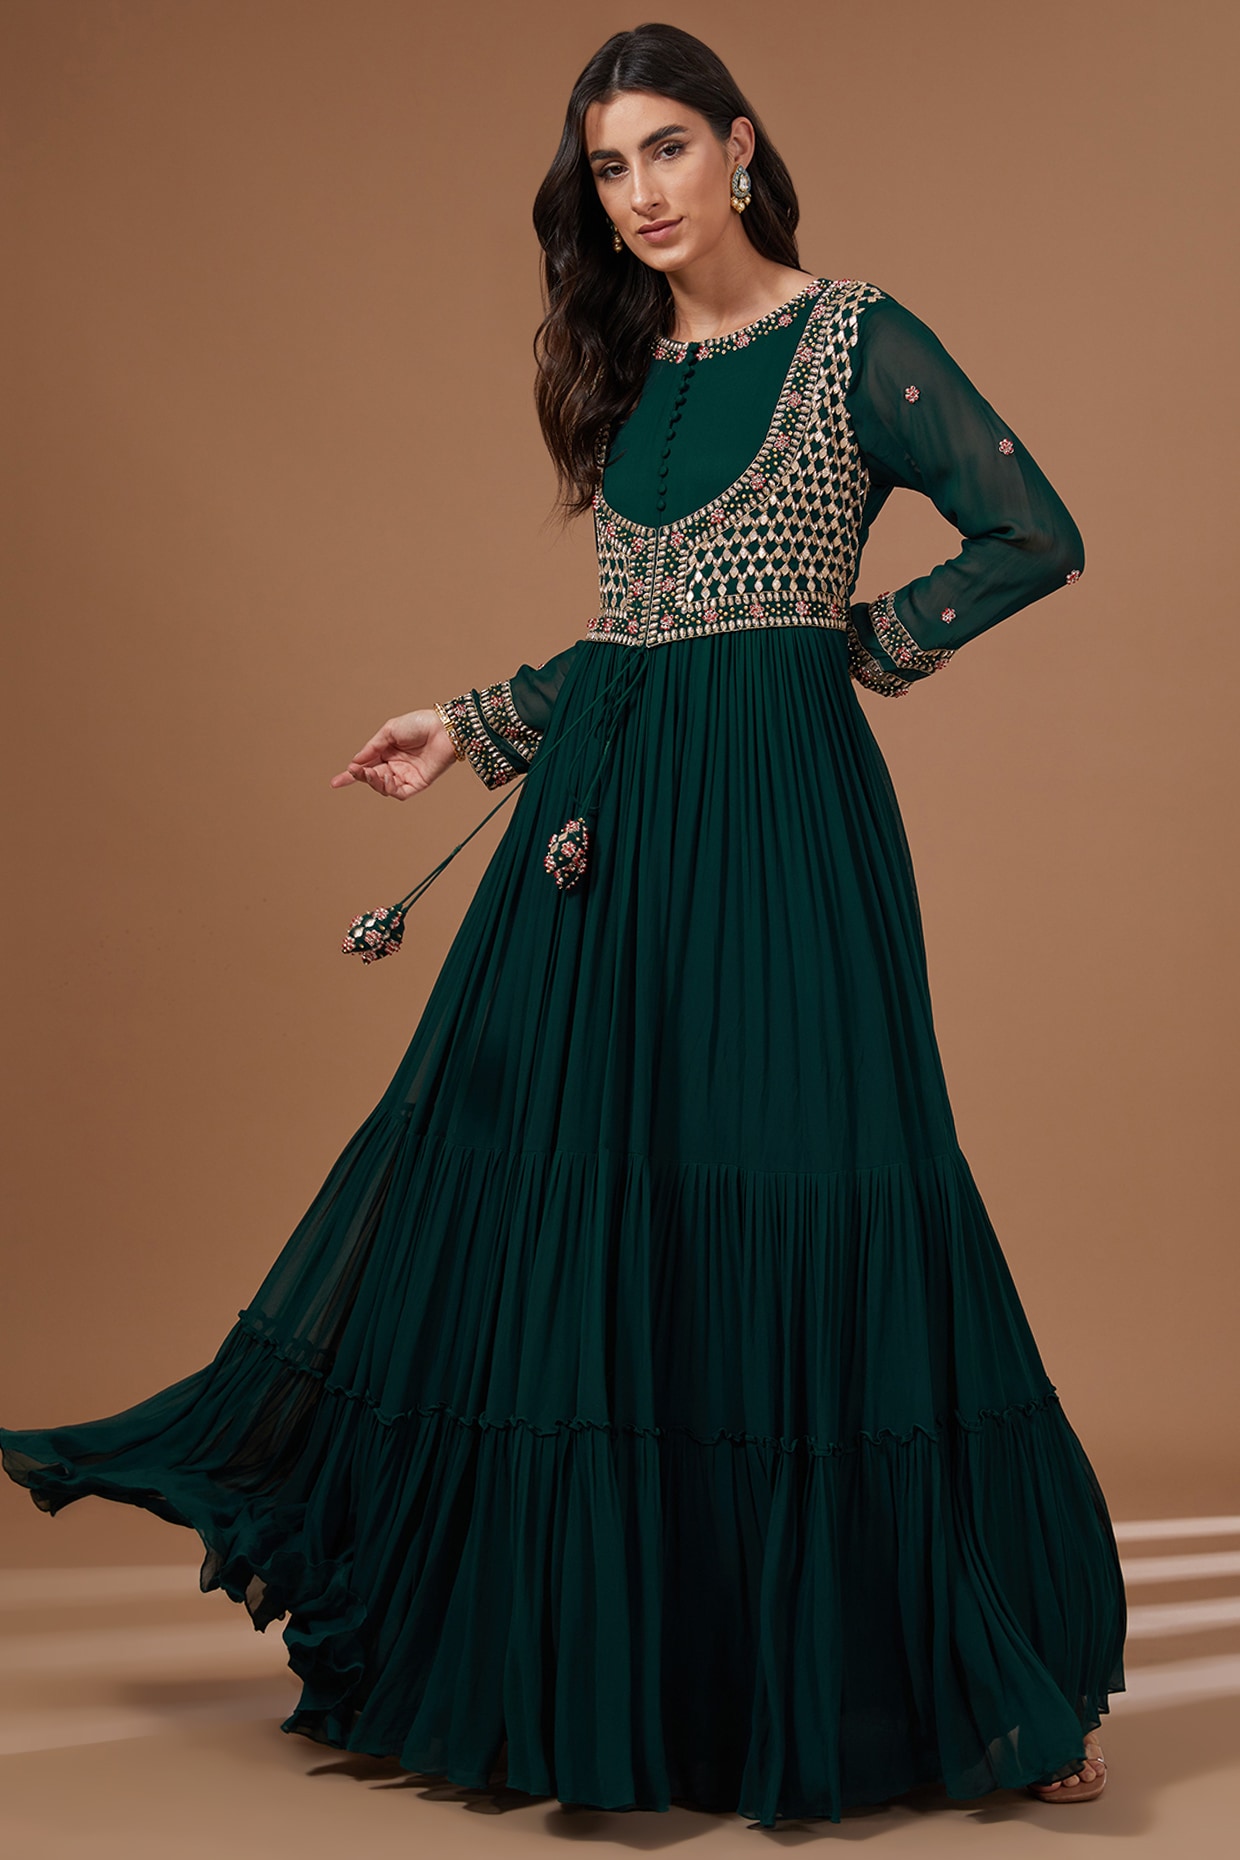 Bottle Green Embroidered Net Pant Kameez | Anarkali dress, Anarkali suit,  Unique womens dresses